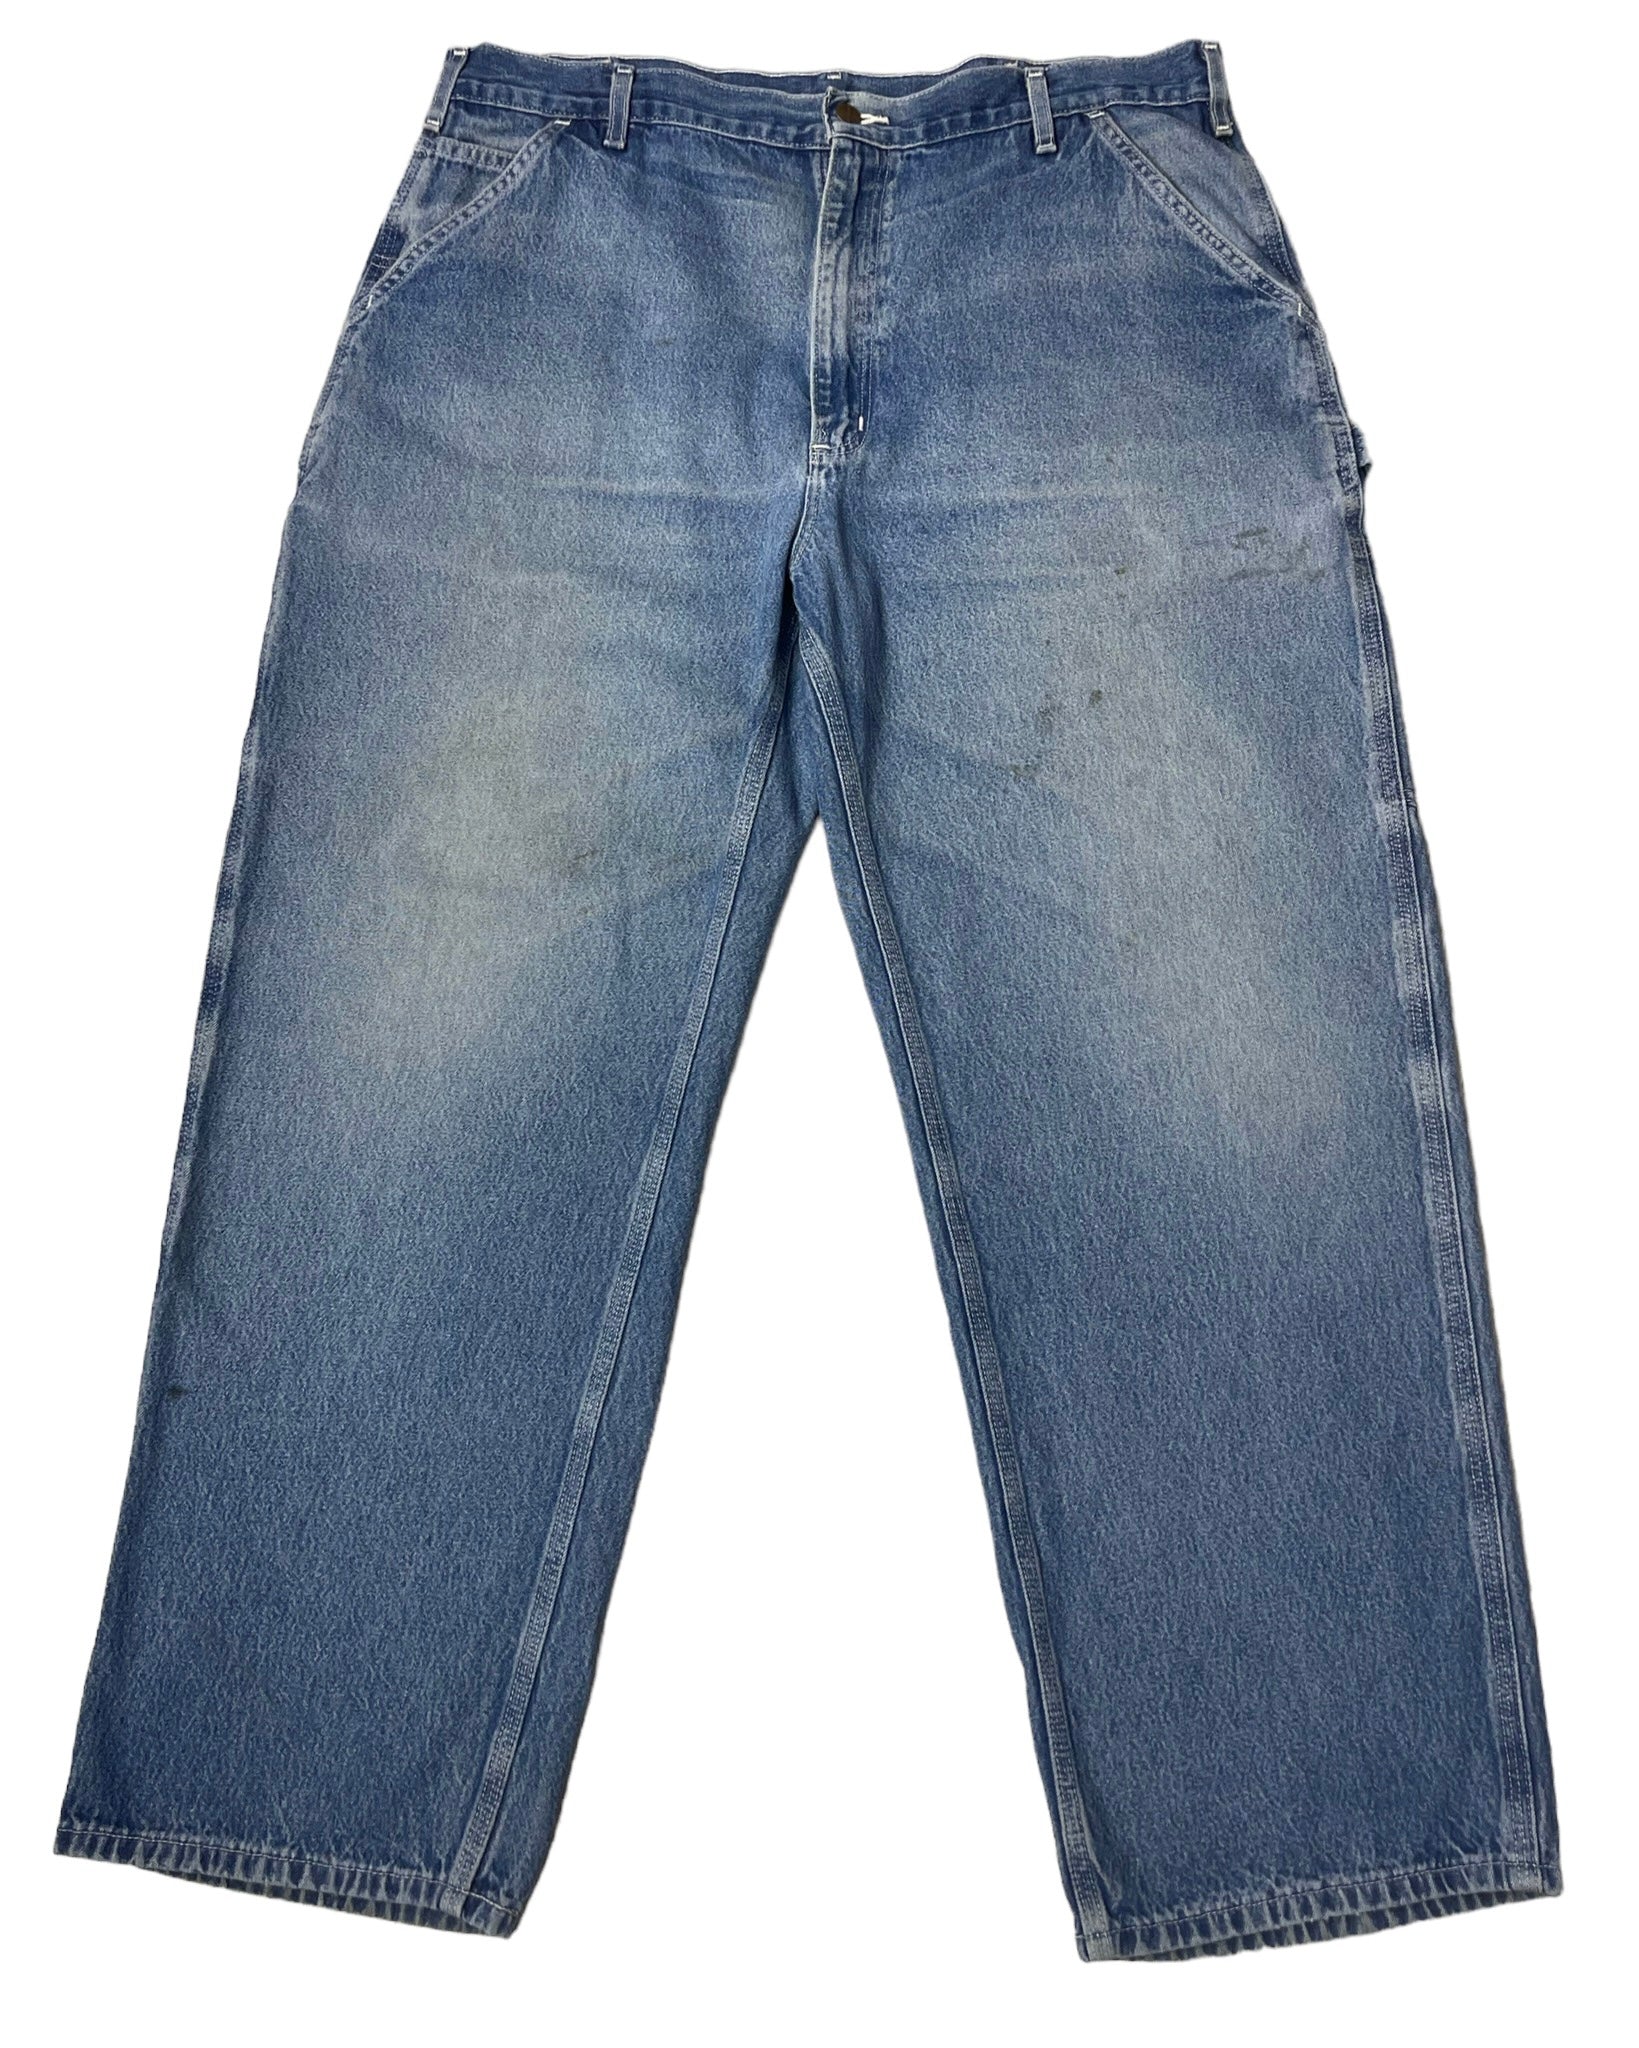  Jeans Carhartt Jean - B13DST - W40 L30 - PLOMOSTORE